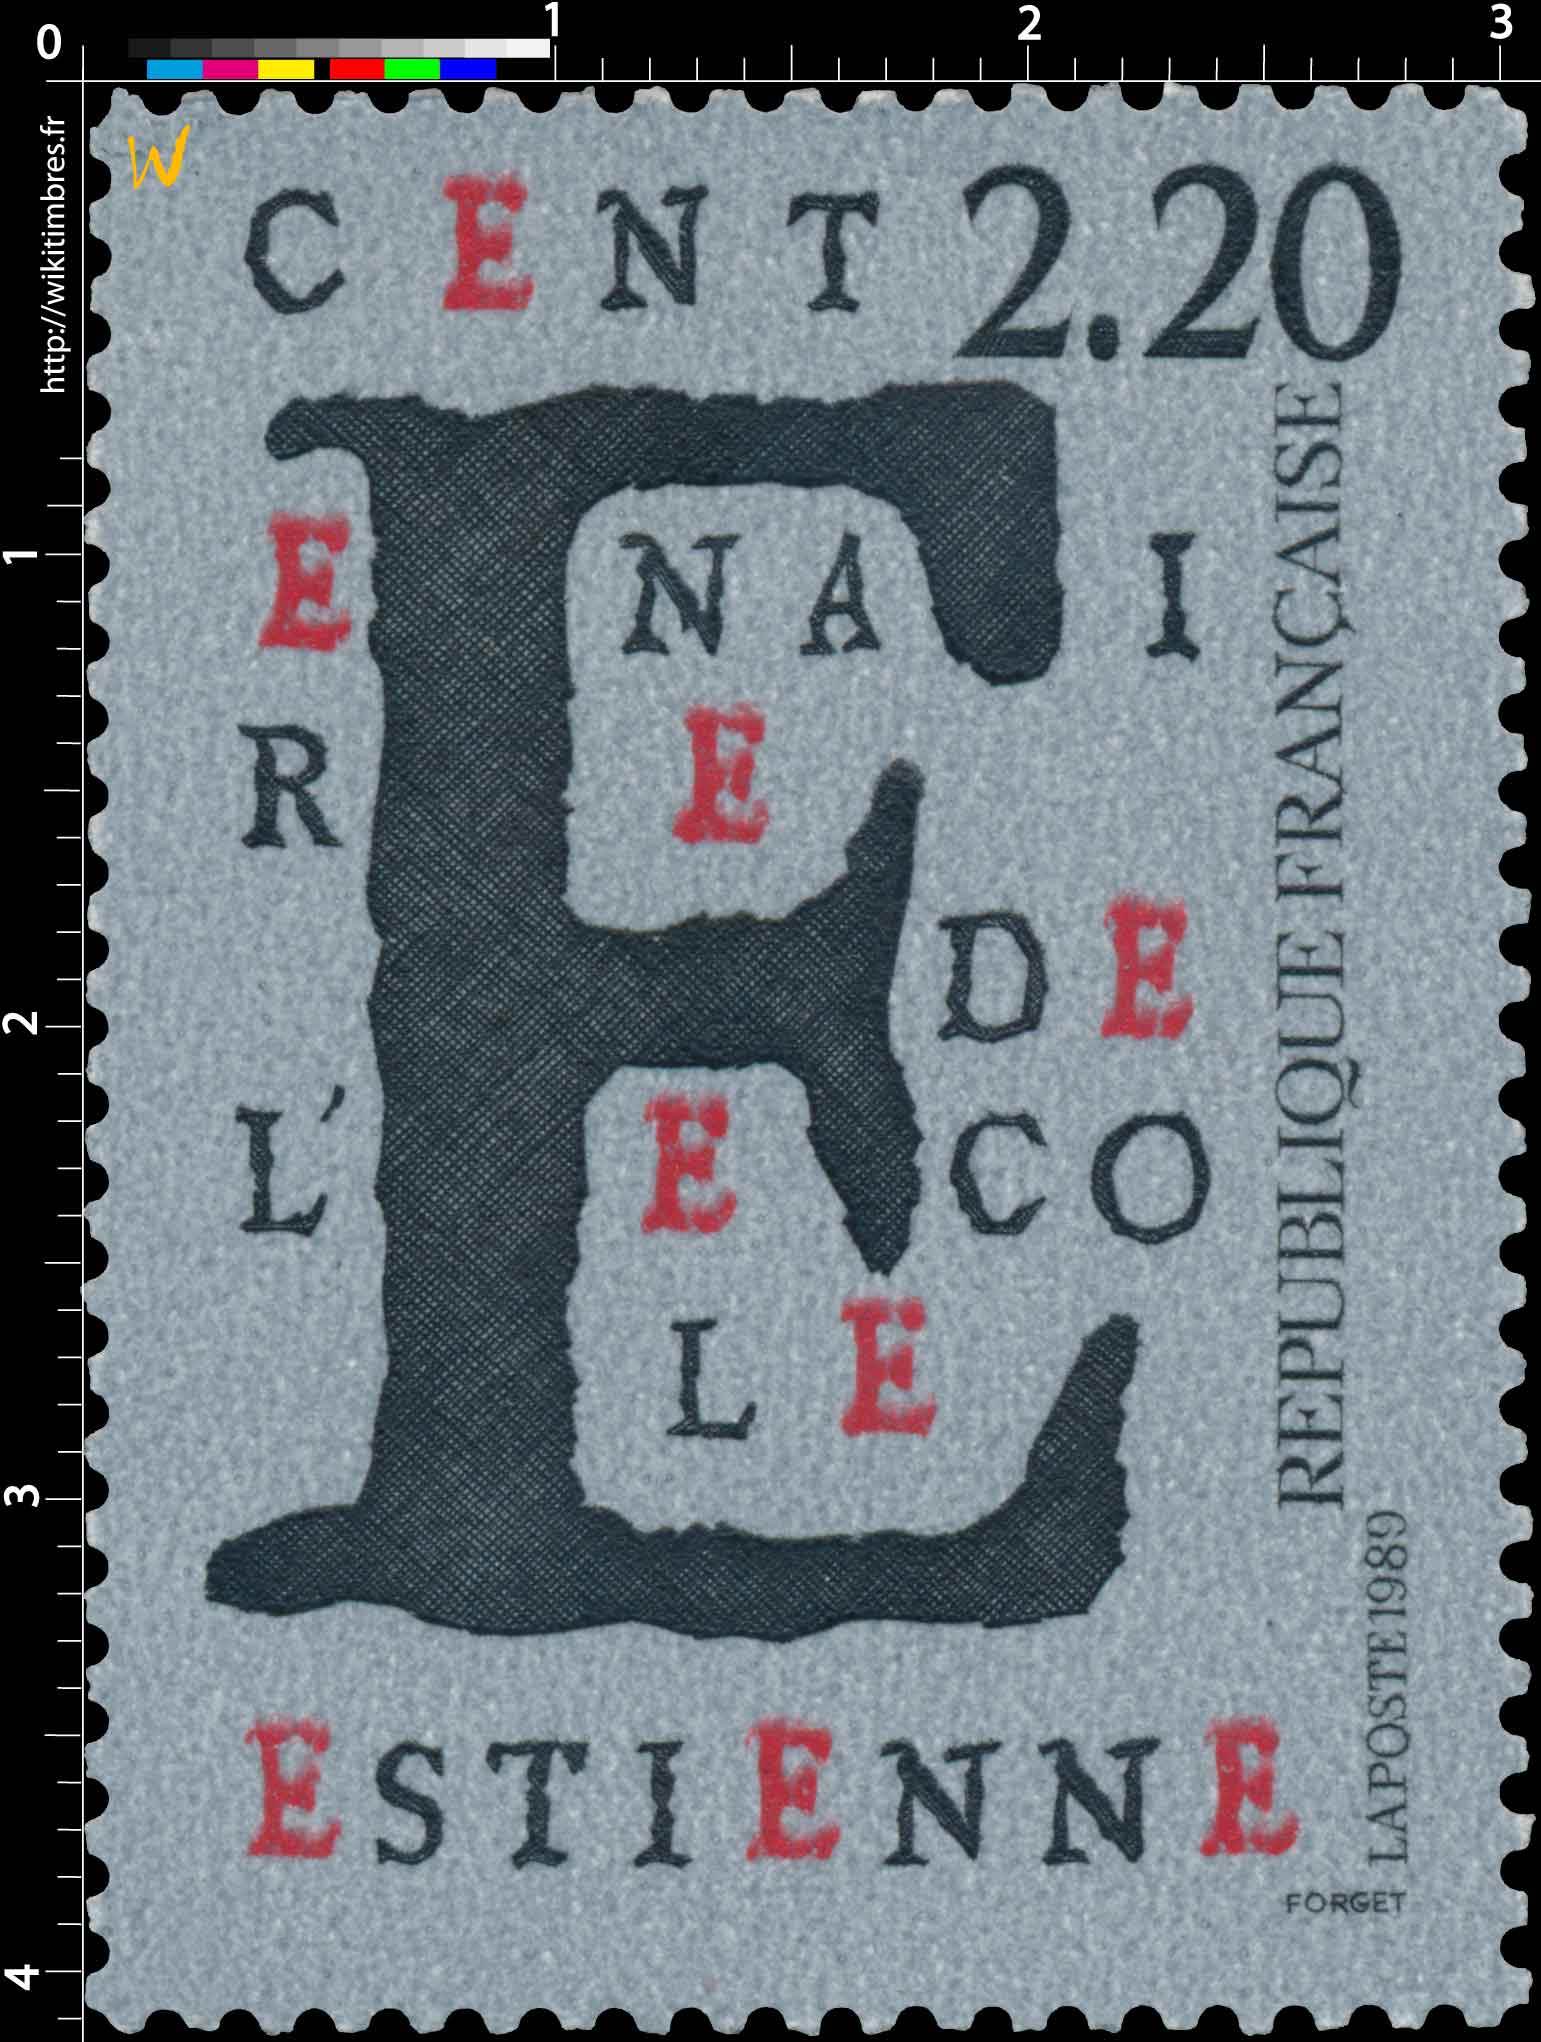 1989 CENTENAIRE DE L'ÉCOLE ESTIENNE